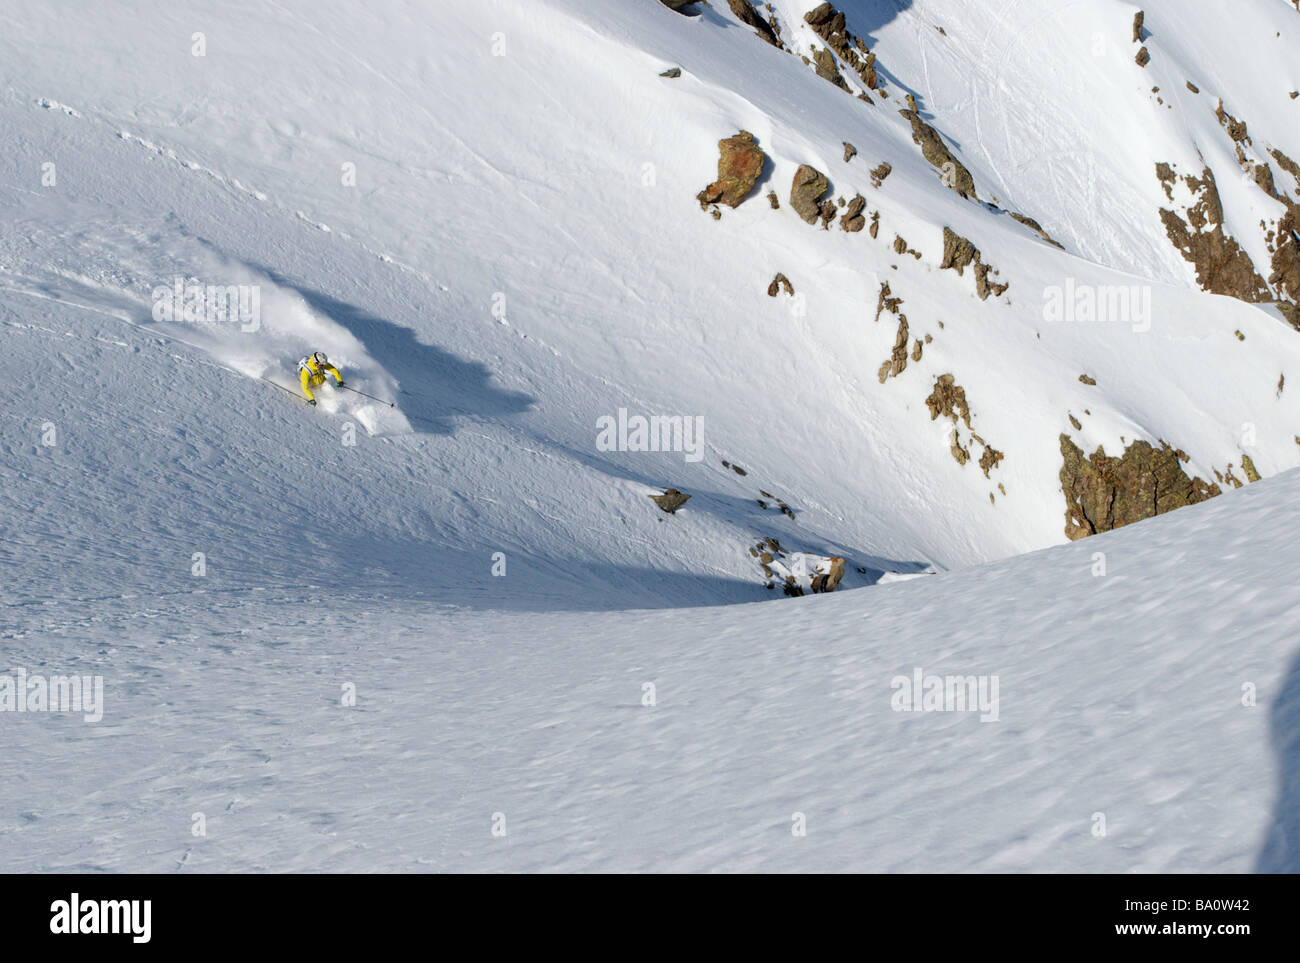 Telemark à poudreuse, Brevent-Flegere de ski, Chamonix, France Banque D'Images